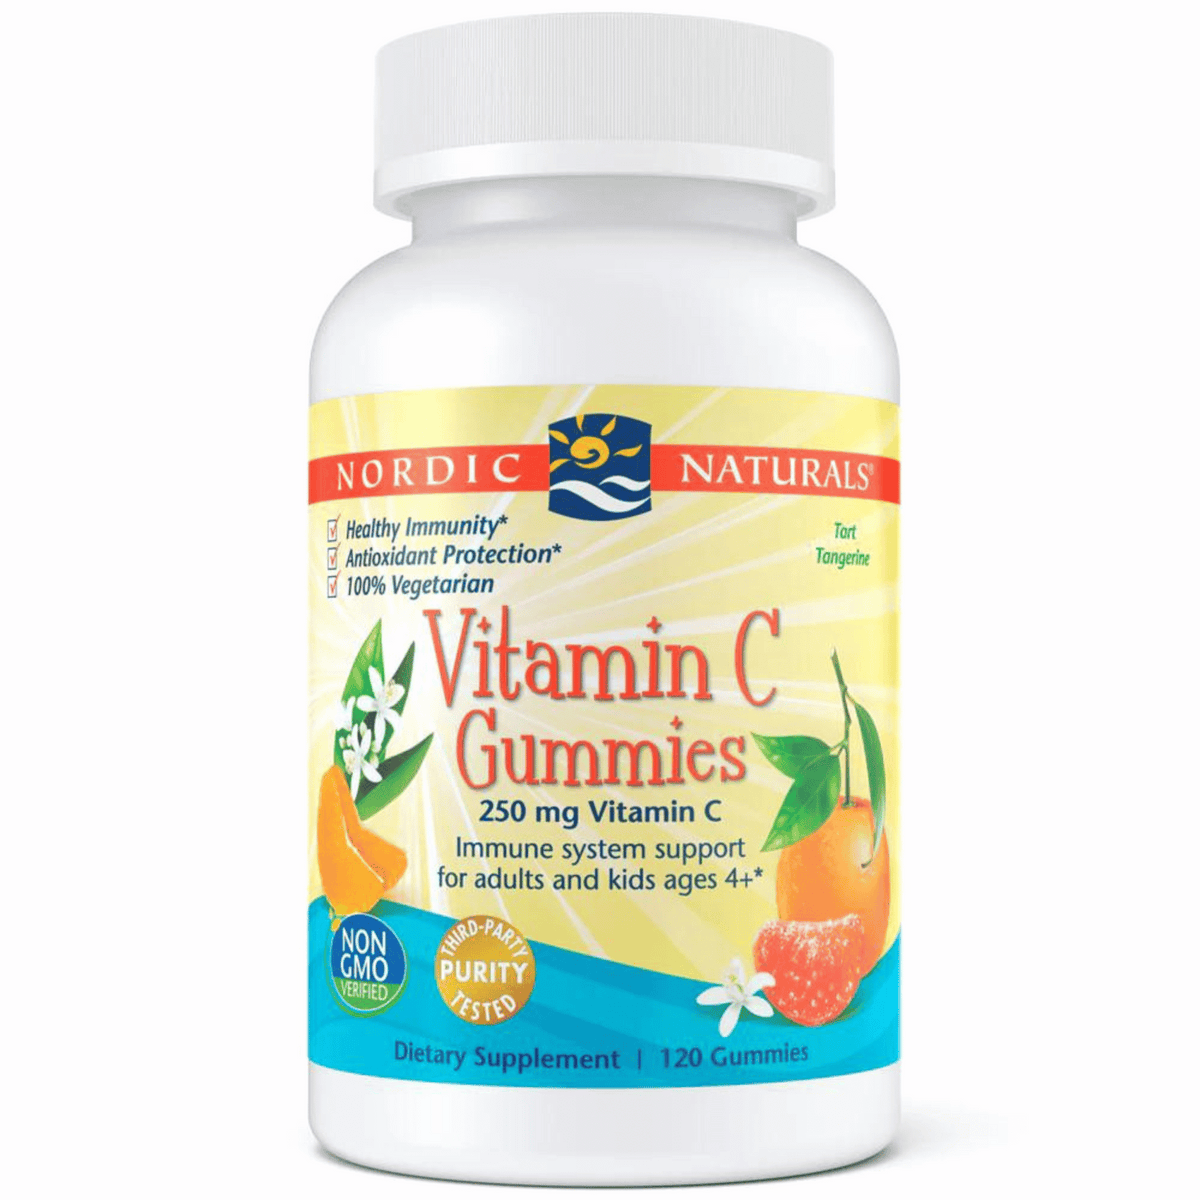 Primary Image of Vitamin-C Gummies